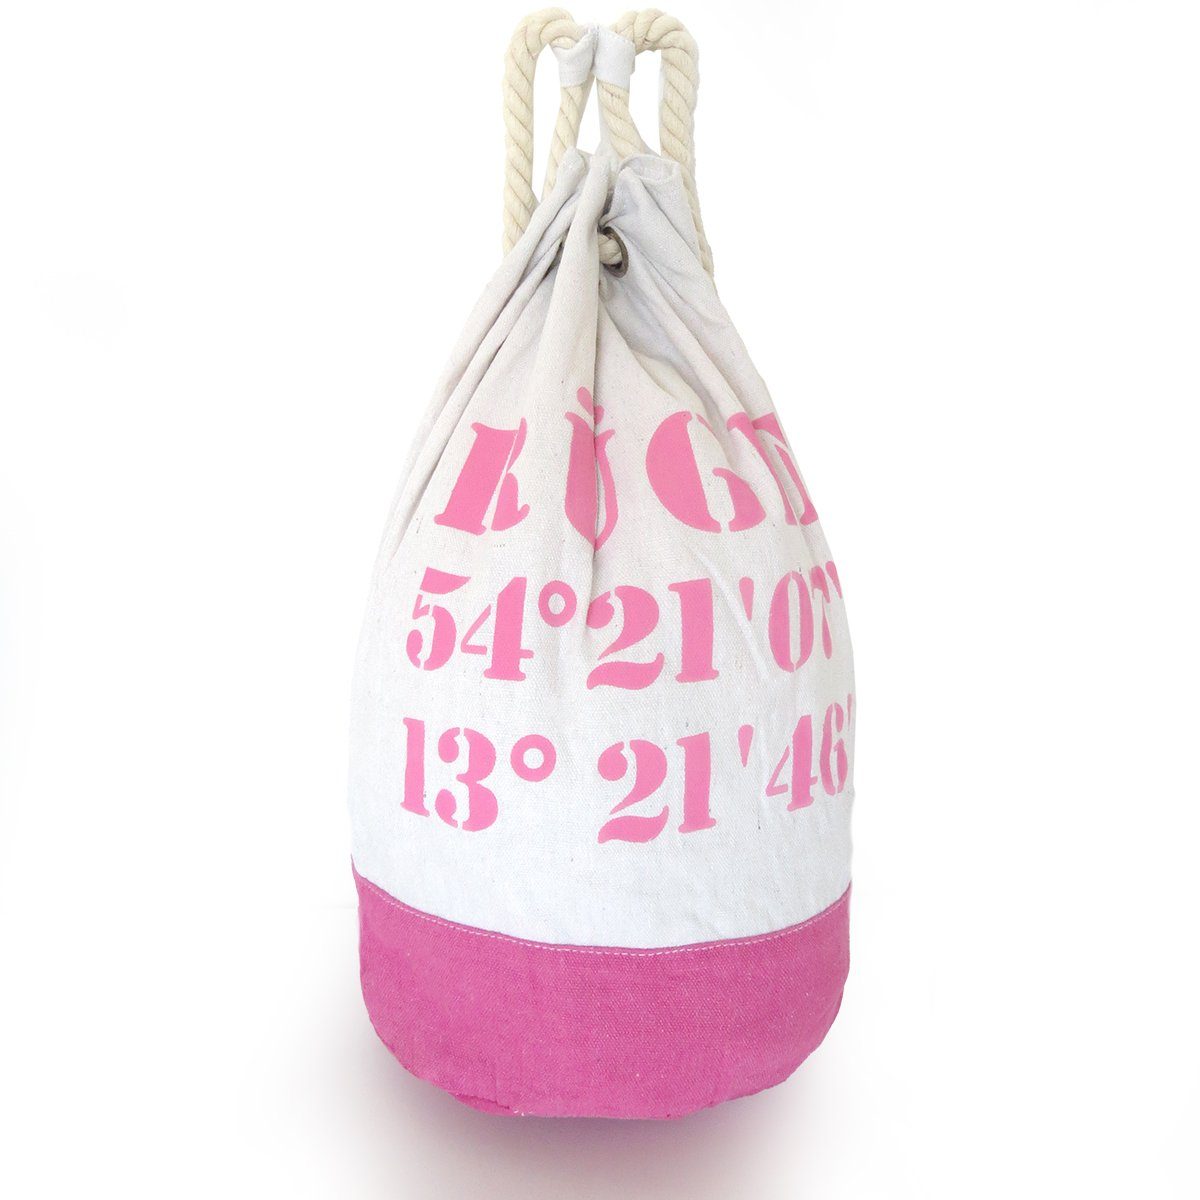 [Versand täglich außer an Feiertagen] Sonia Originelli Umhängetasche XL rosa Marinesack Bag Seesack "Rügen" Maritim